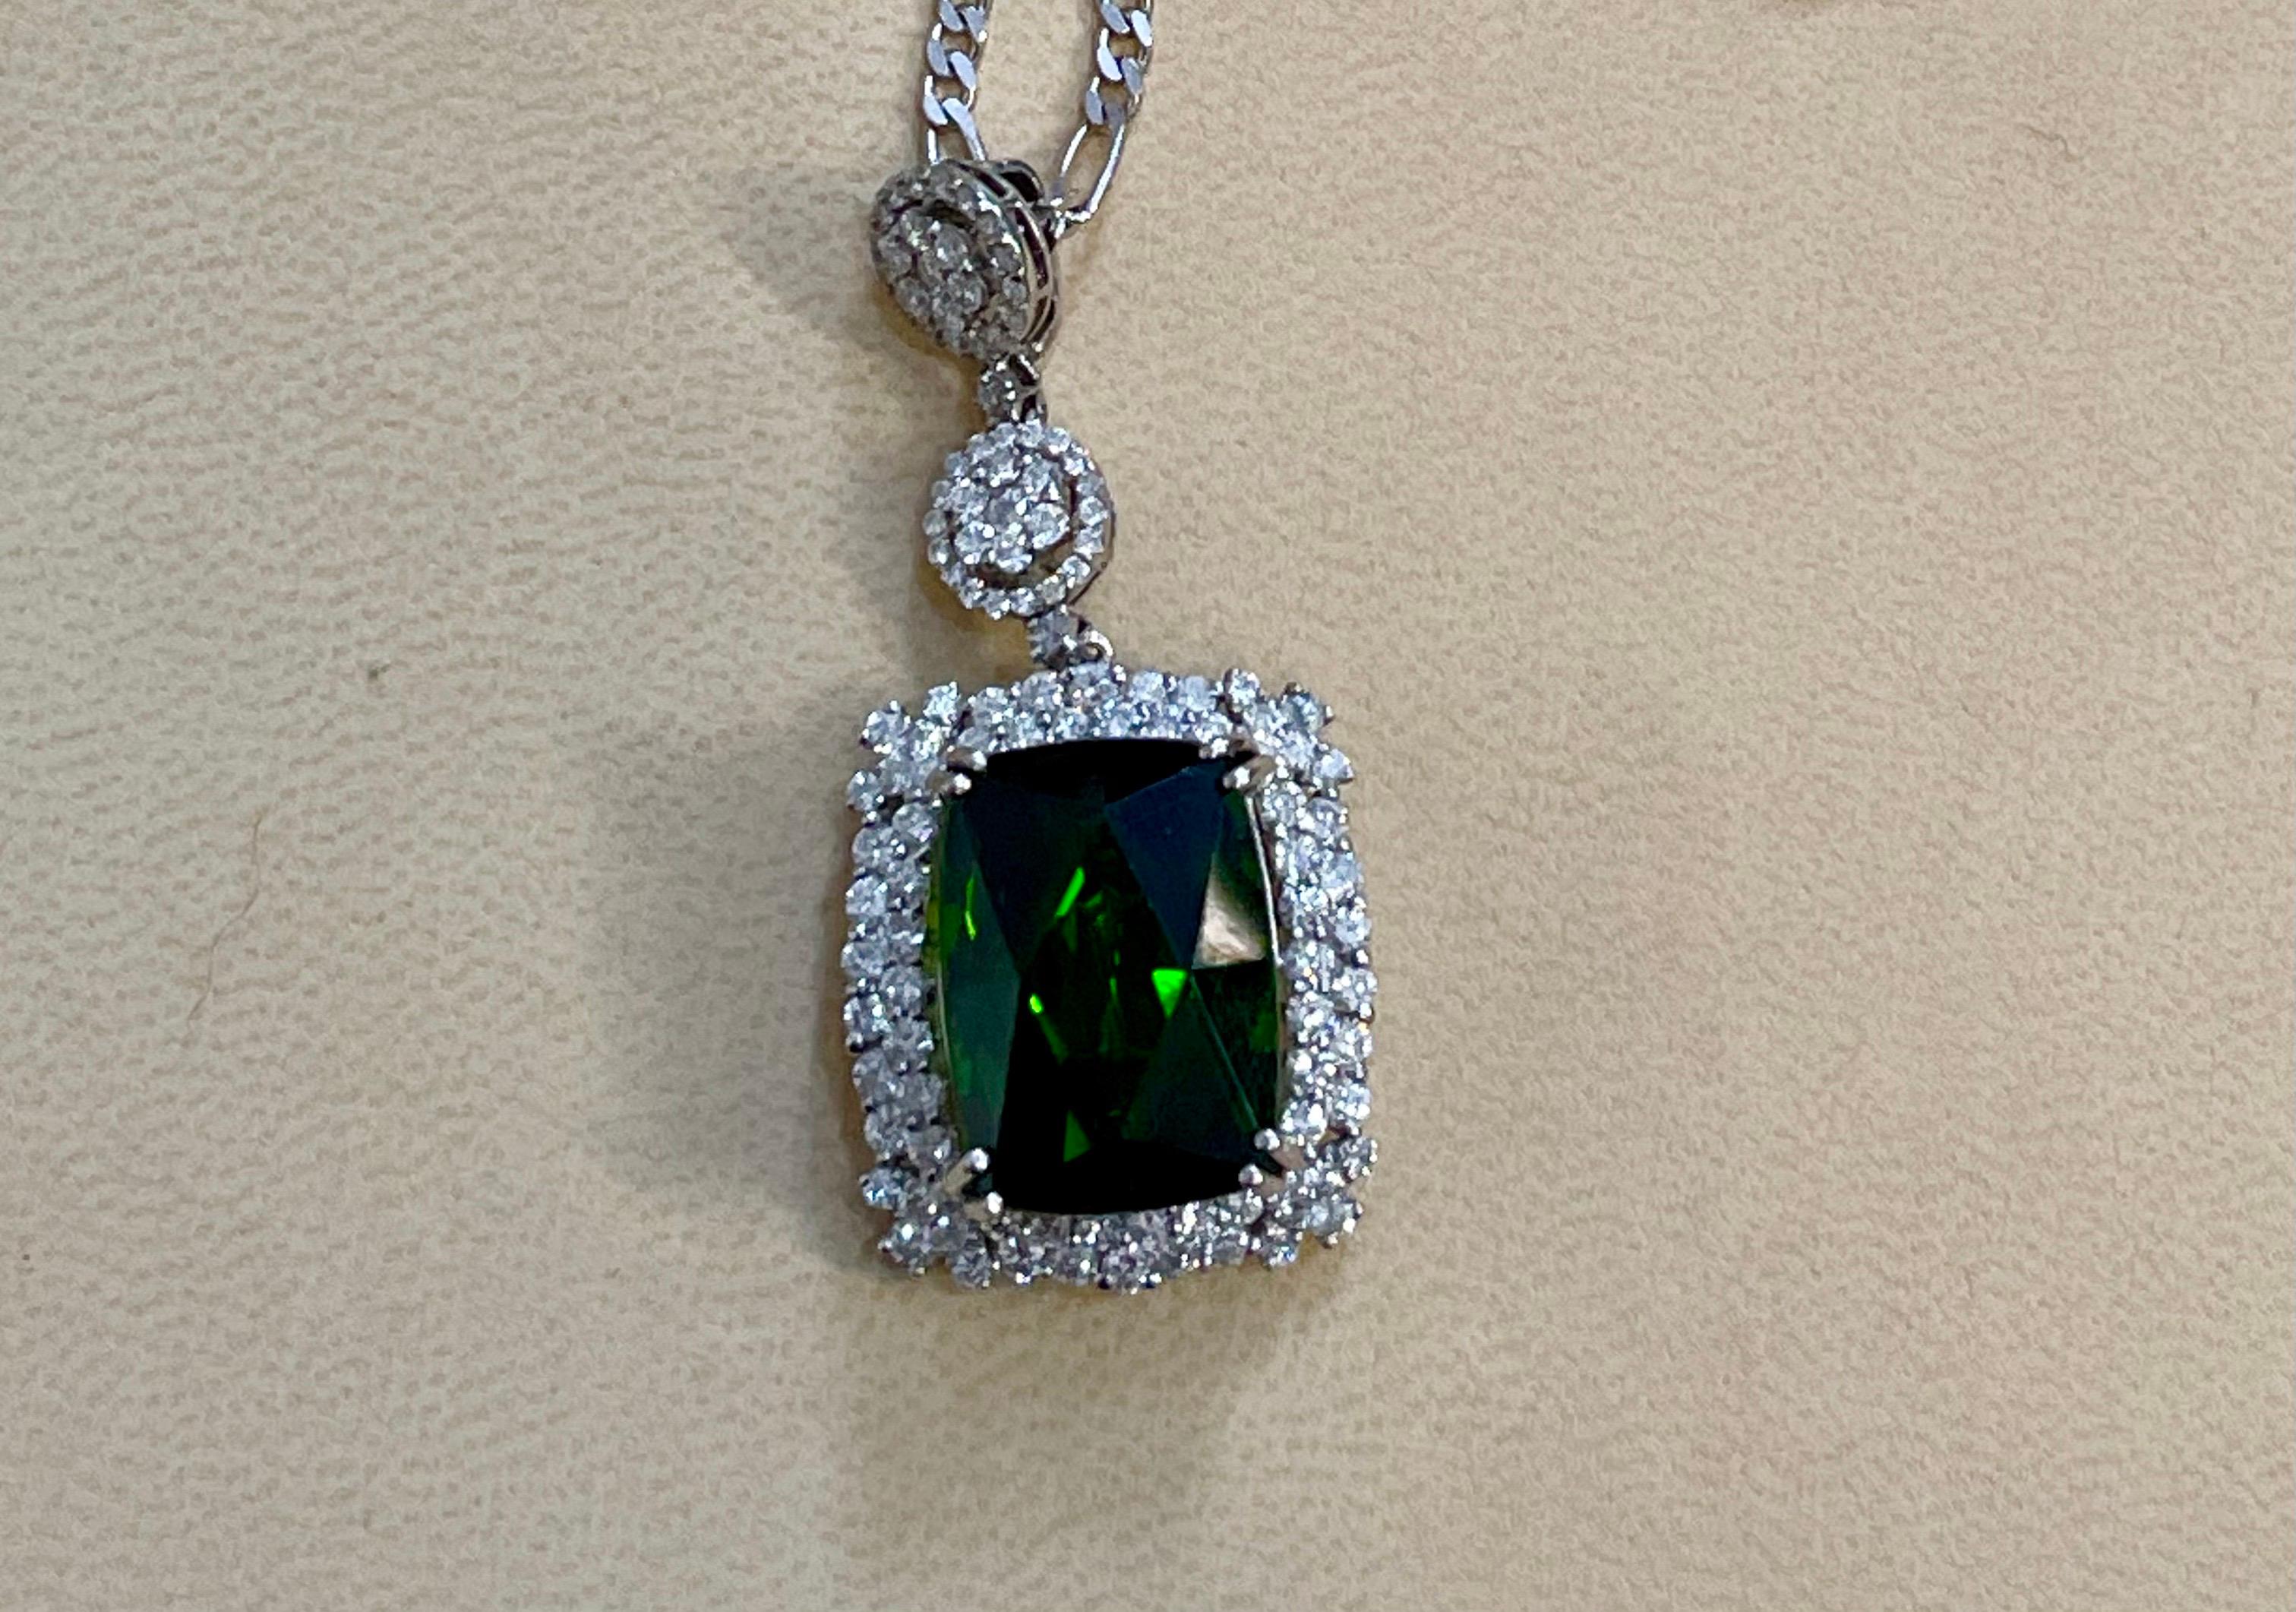 17 Carat Green Tourmaline and 4 Carat Diamond Pendant / Necklace 14 Karat Gold For Sale 4